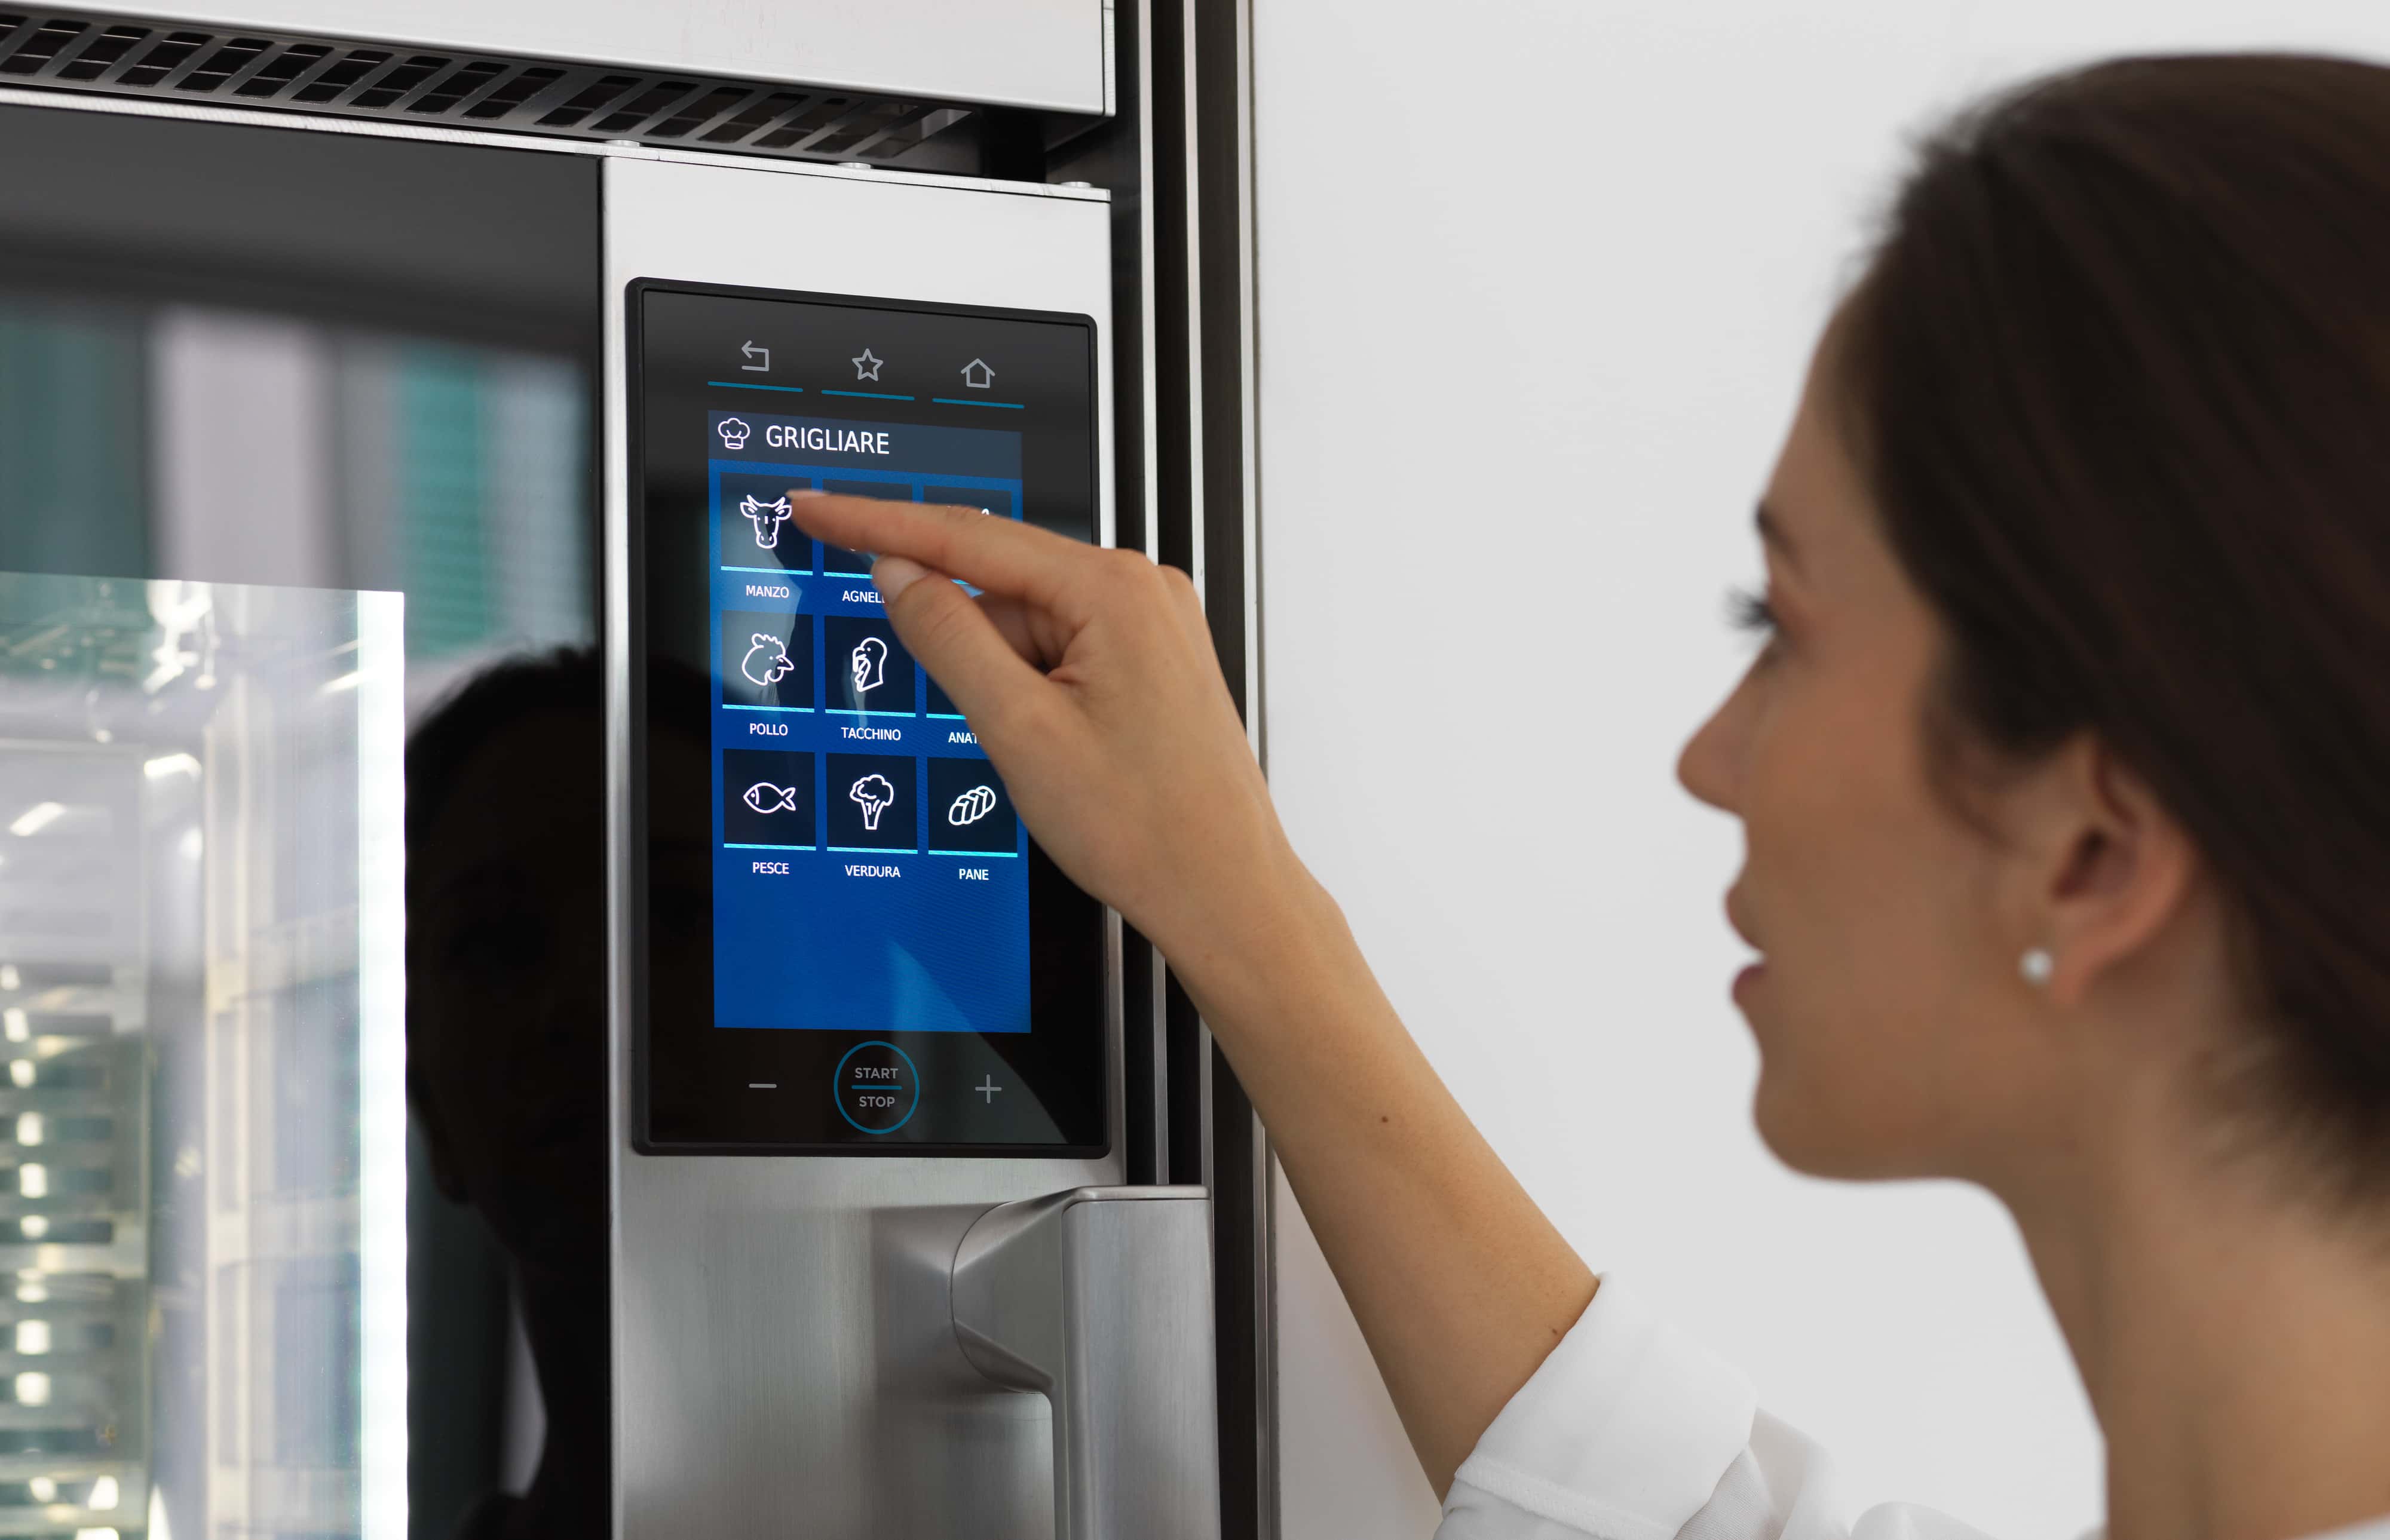 Interfaccia digitale dei forni smart di Unox Casa, semplice e intuitiva